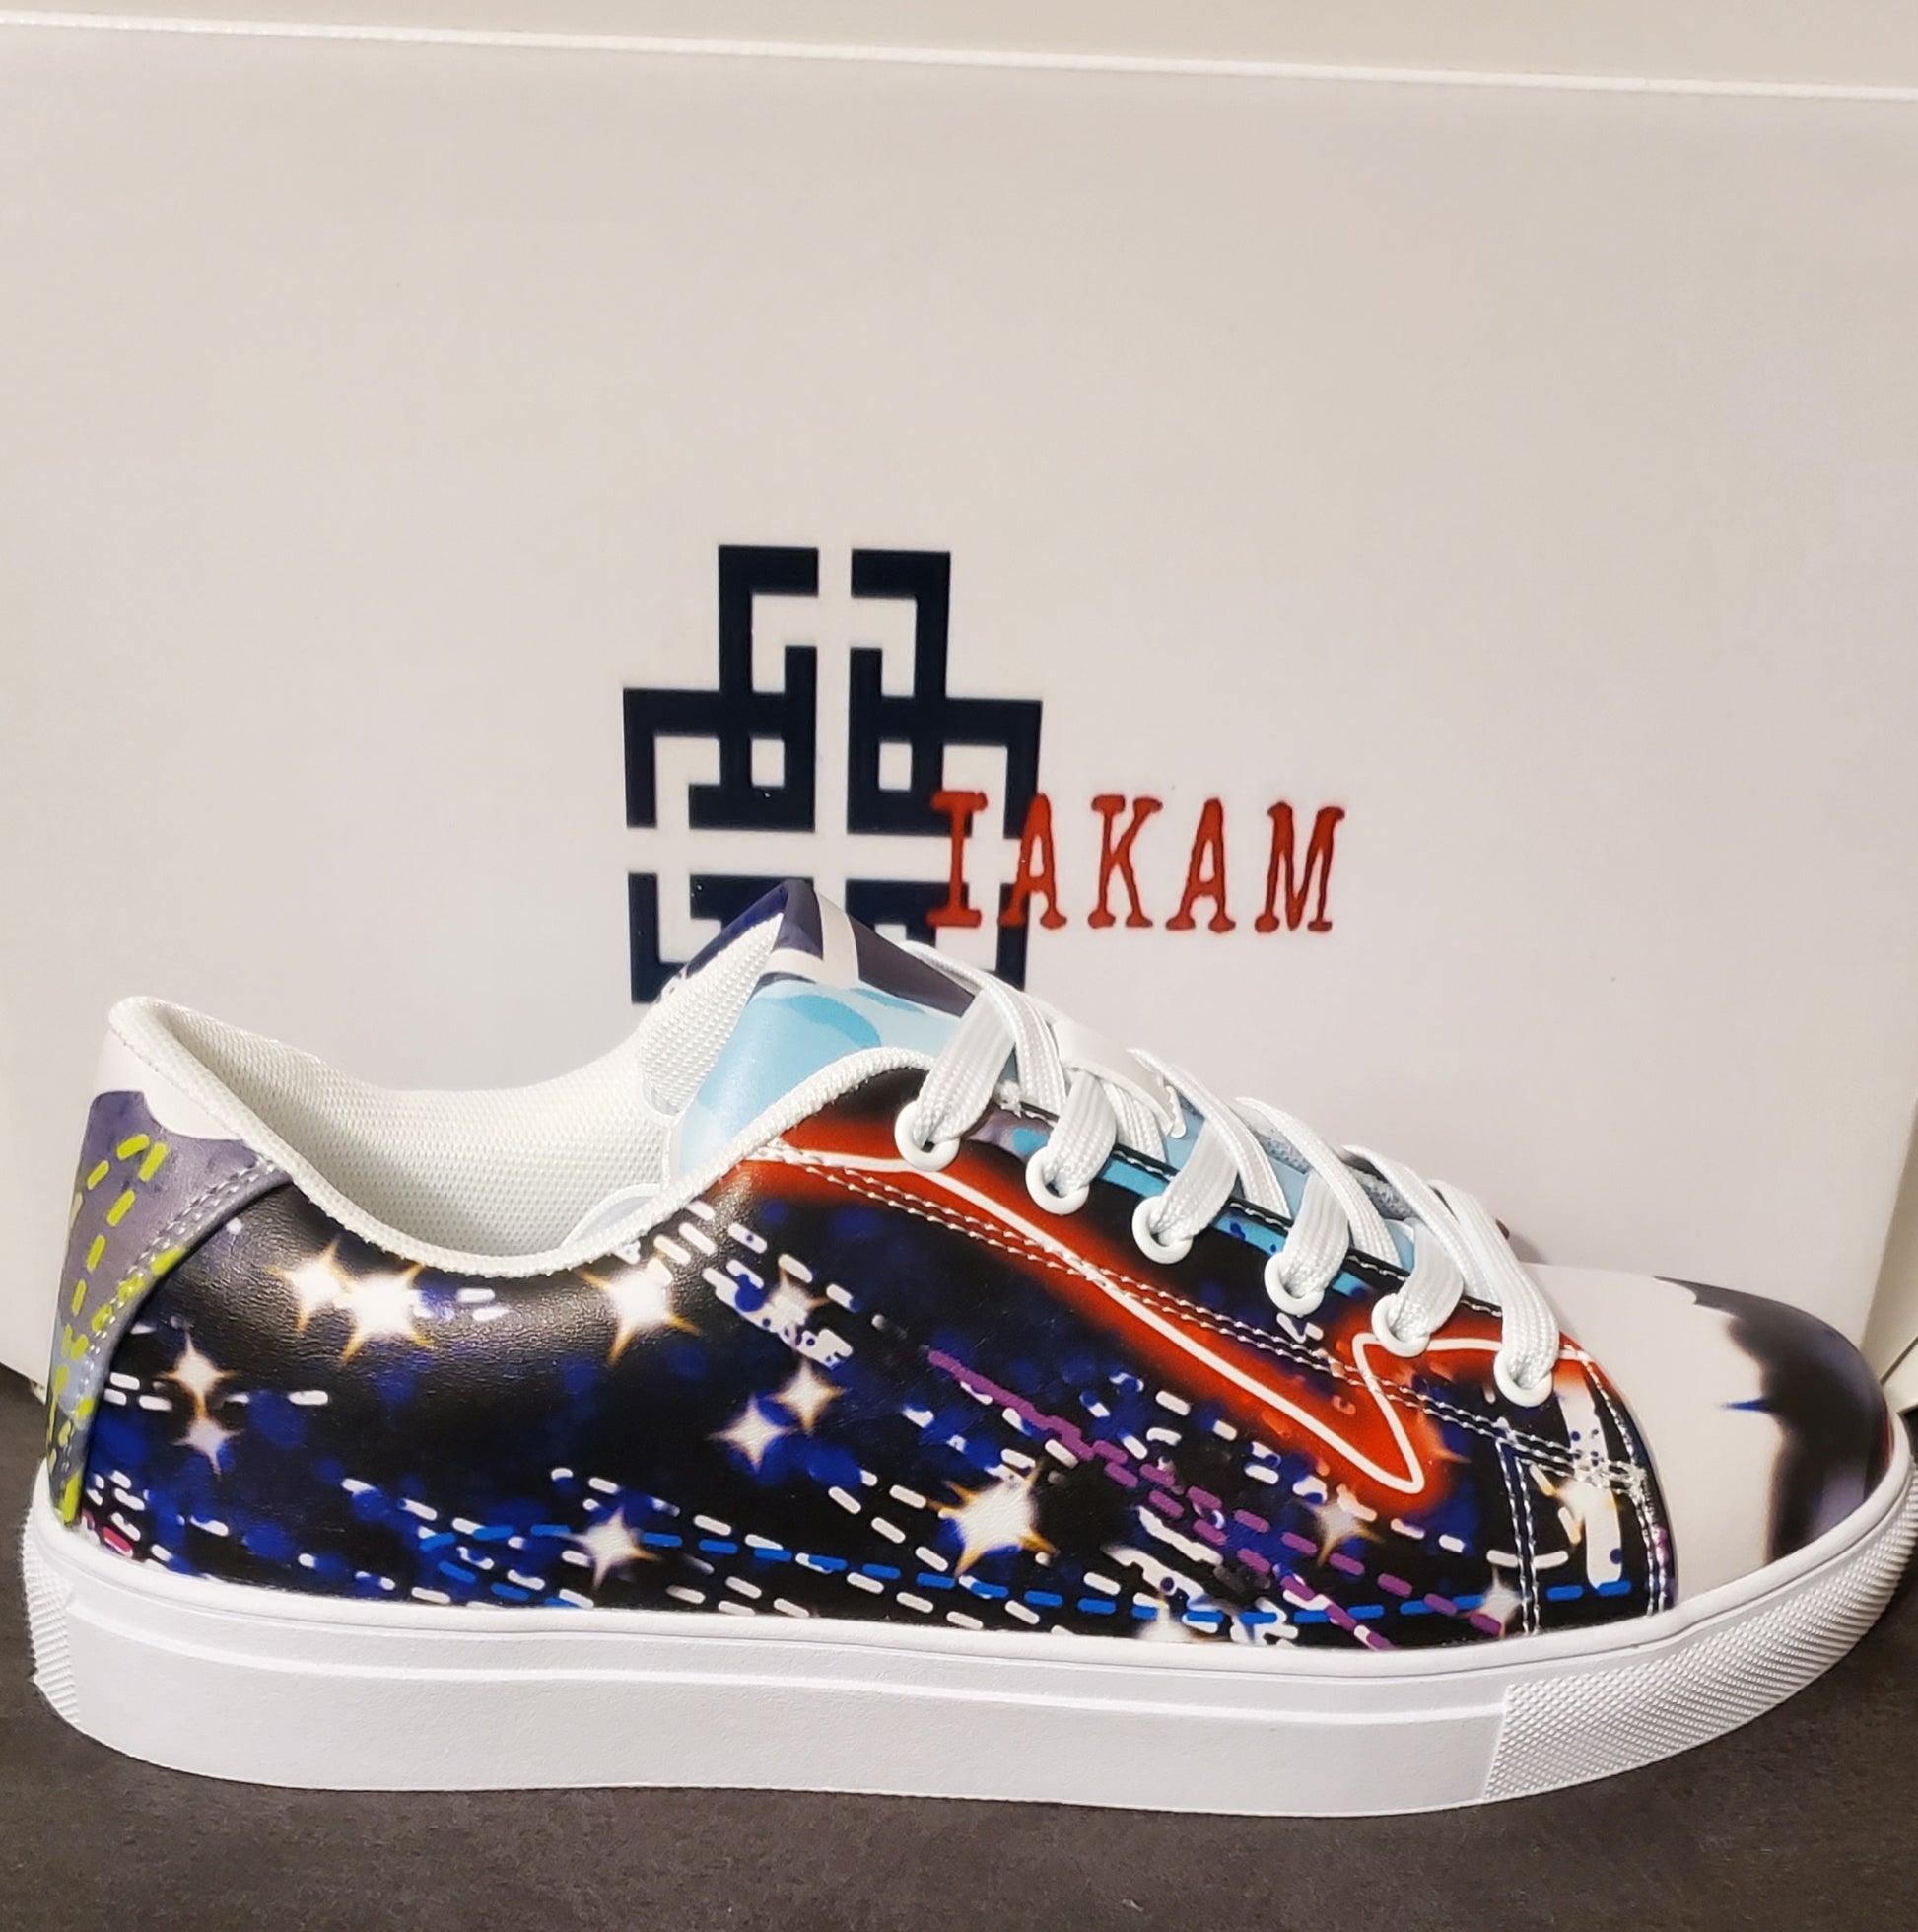 IAKAM Sneakers IME - IAKAM